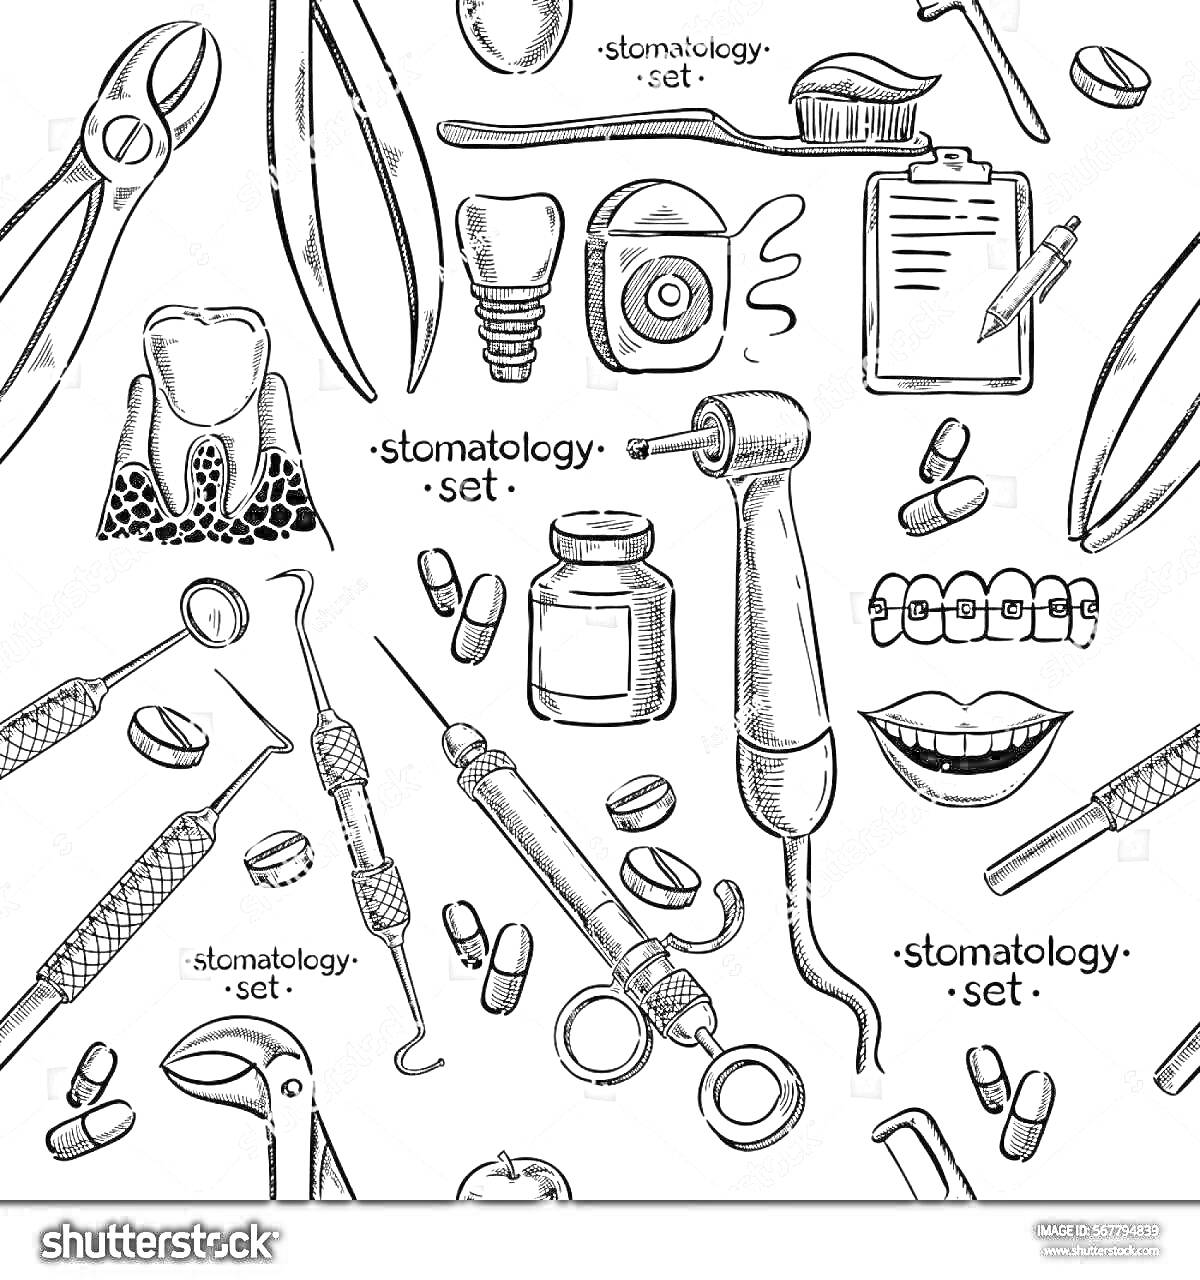 На раскраске изображено: Стоматология, Медицинские инструменты, Таблица, Ручка, Зубы, Корни, Шприц, Таблетки, Рот